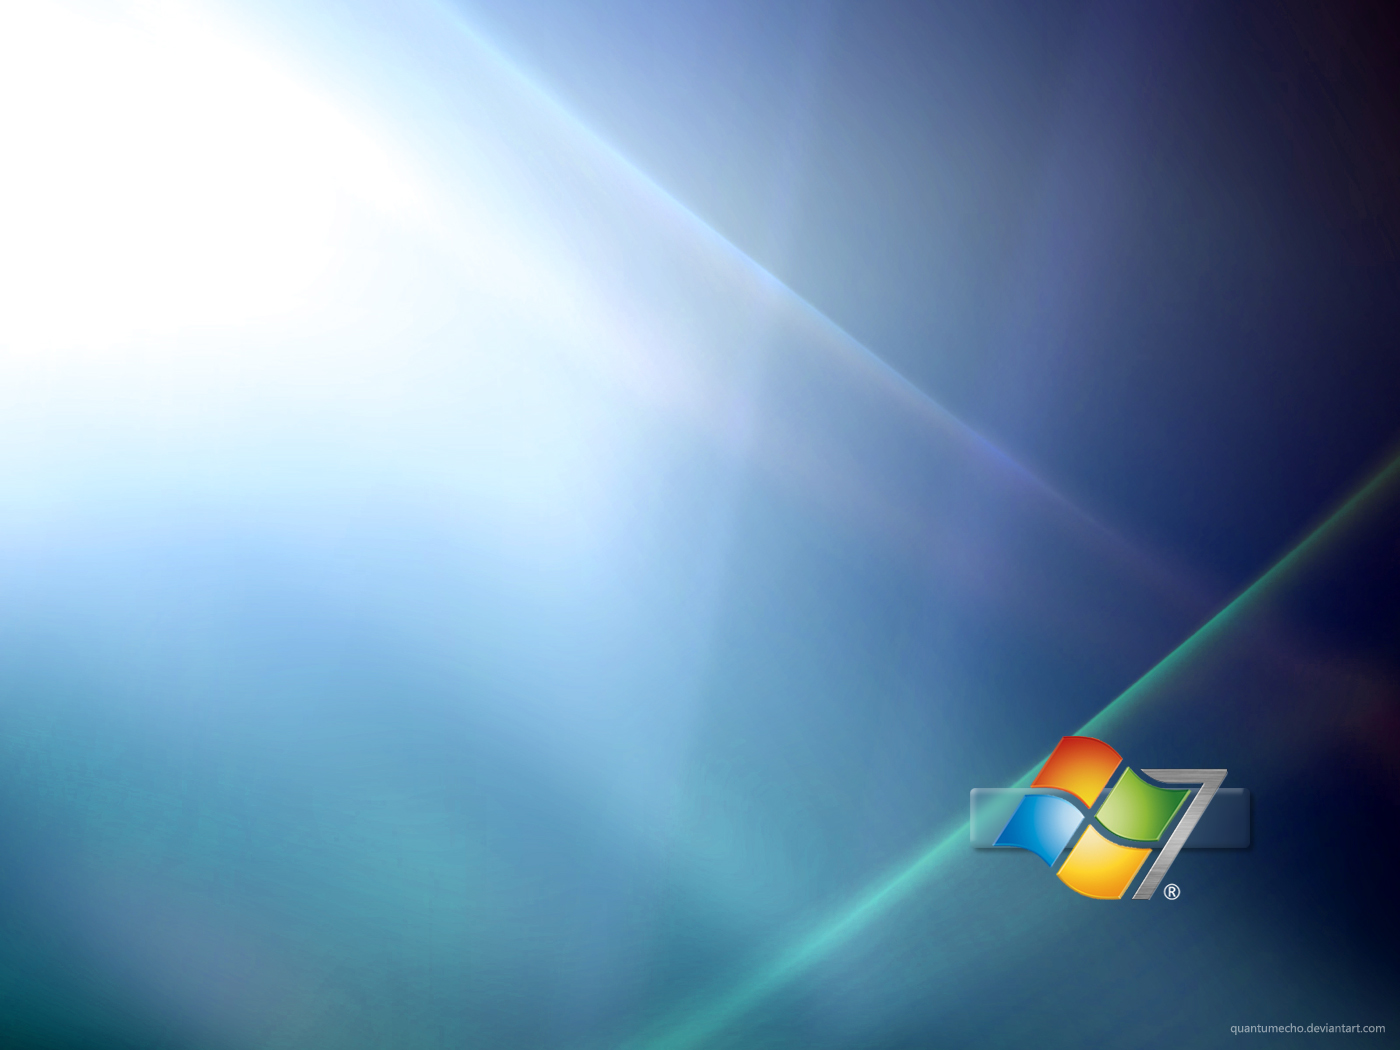 Bạn quá chán với hình nền mặc định của Windows 10? Hãy xóa bỏ chúng và thay thế bằng những hình nền động hoặc tĩnh đẹp mắt hơn. Bài viết dưới đây sẽ hướng dẫn bạn cách xóa hình nền Windows 10 để thay thế bằng những giao diện mới mẻ và thu hút hơn.